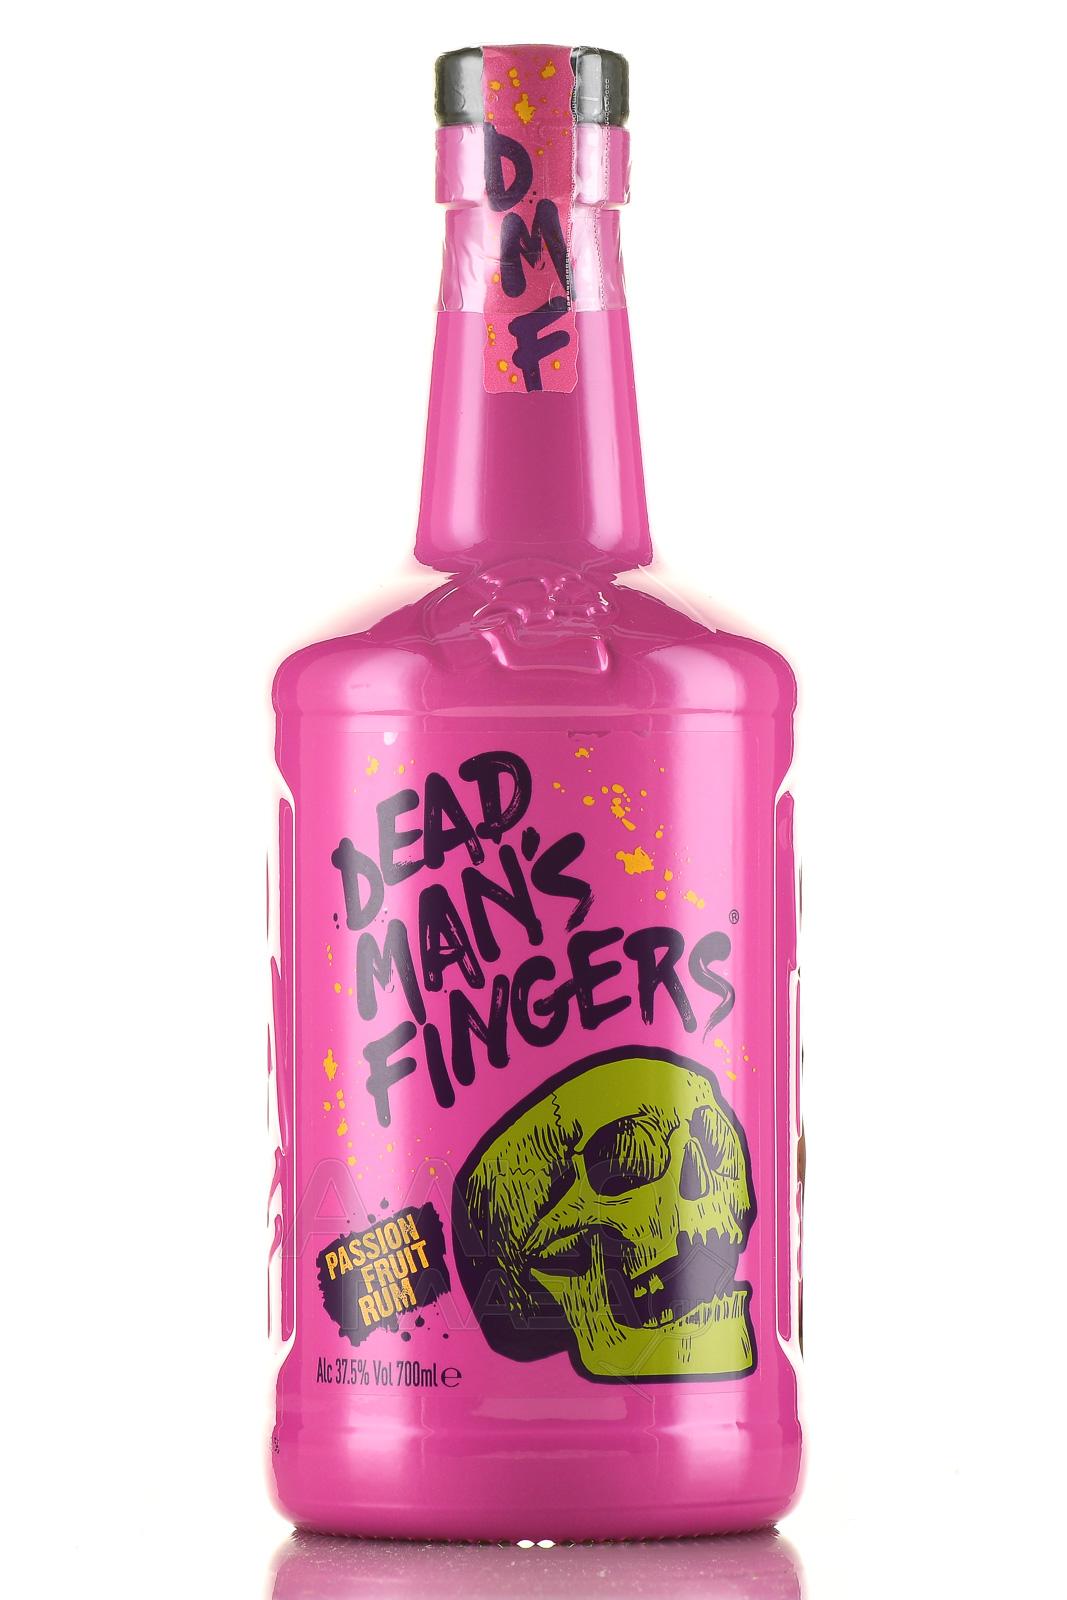 Dead Mans Fingers Passion Fruit Rum купить ром Дэд Мэнс Фингерс Маракуйя 07 л цена